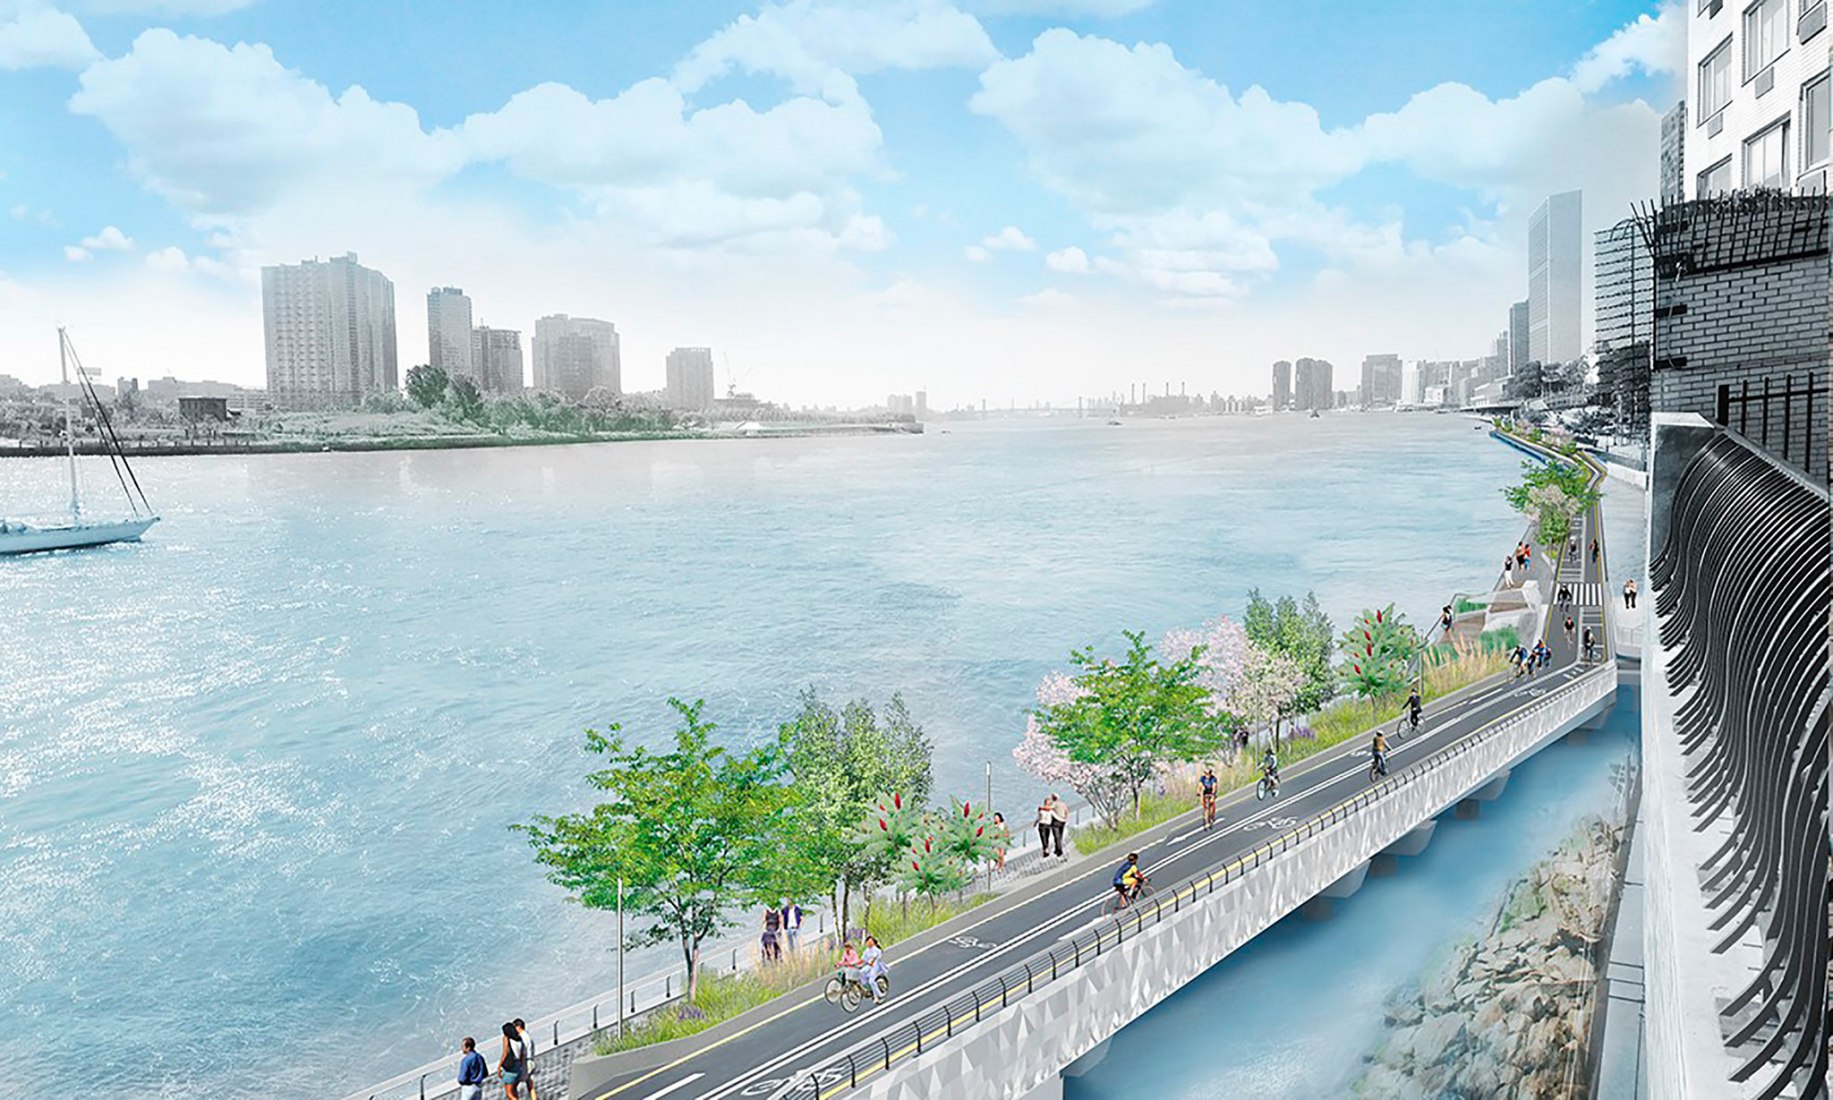 Visualización del proyecto para reducir la distancia entre la calle 41 y la 61 del nuevo corredor verde alrededor de la isla de Manhattan. Imagen cortesía de NYC Economic Development Corporation